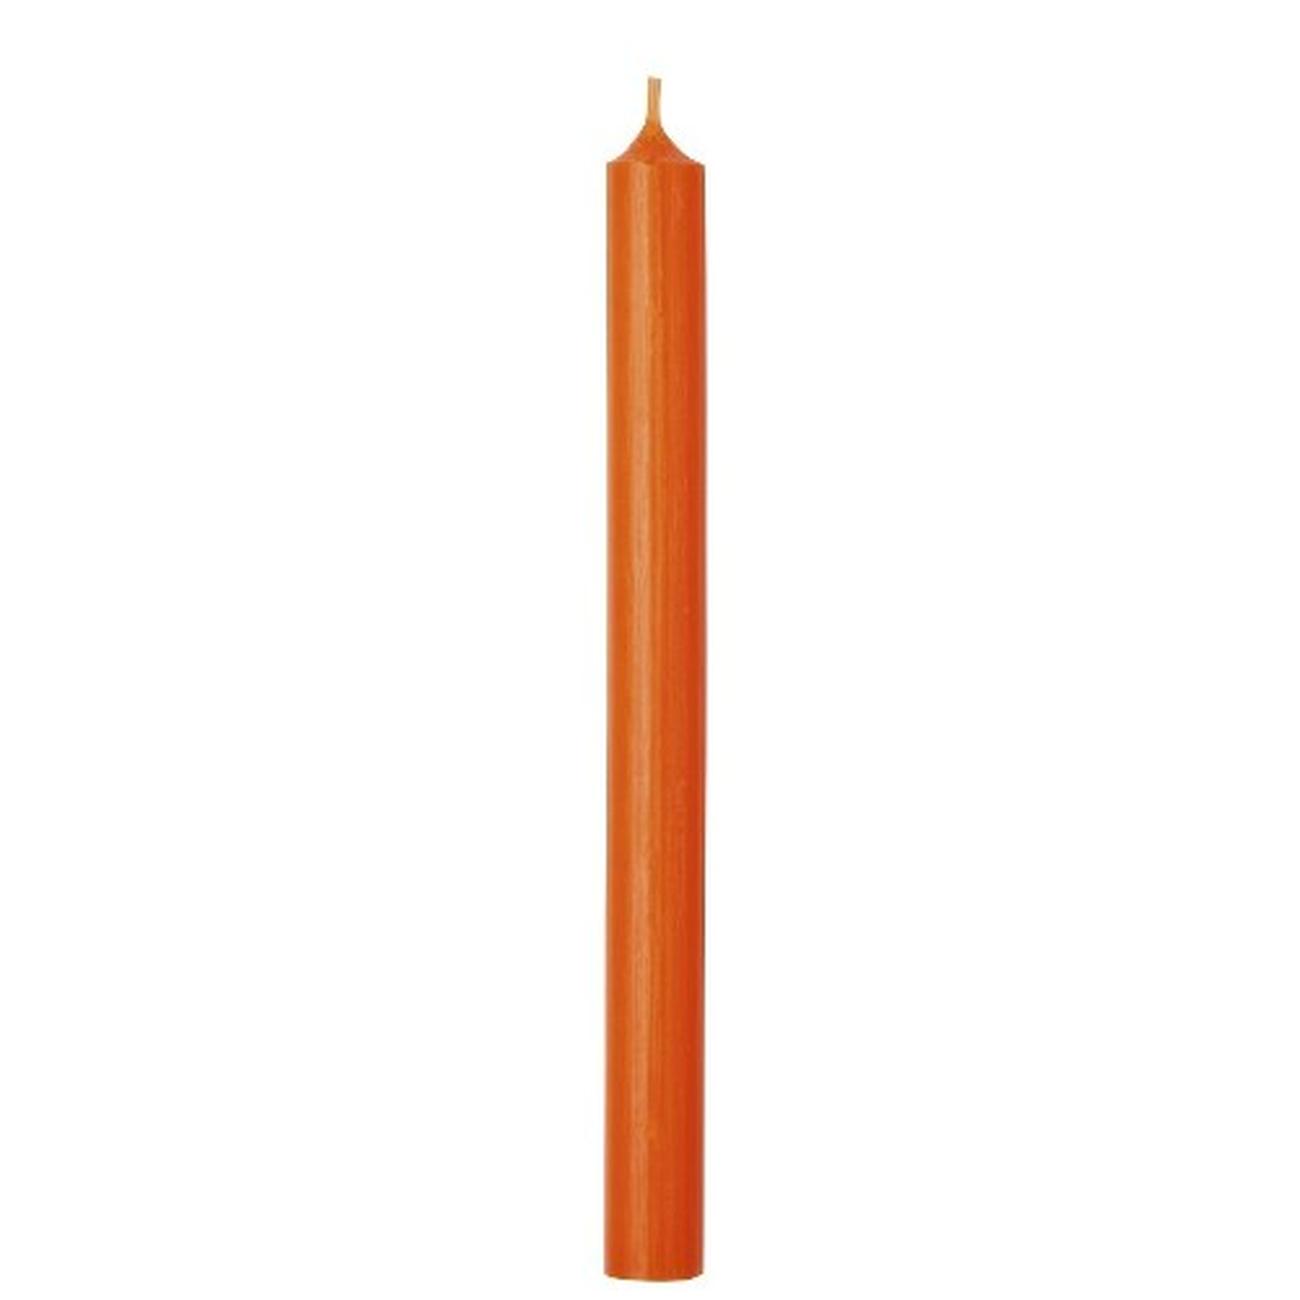 ihr-cylinder-candle-orange - IHR Cylinder Candle Orange